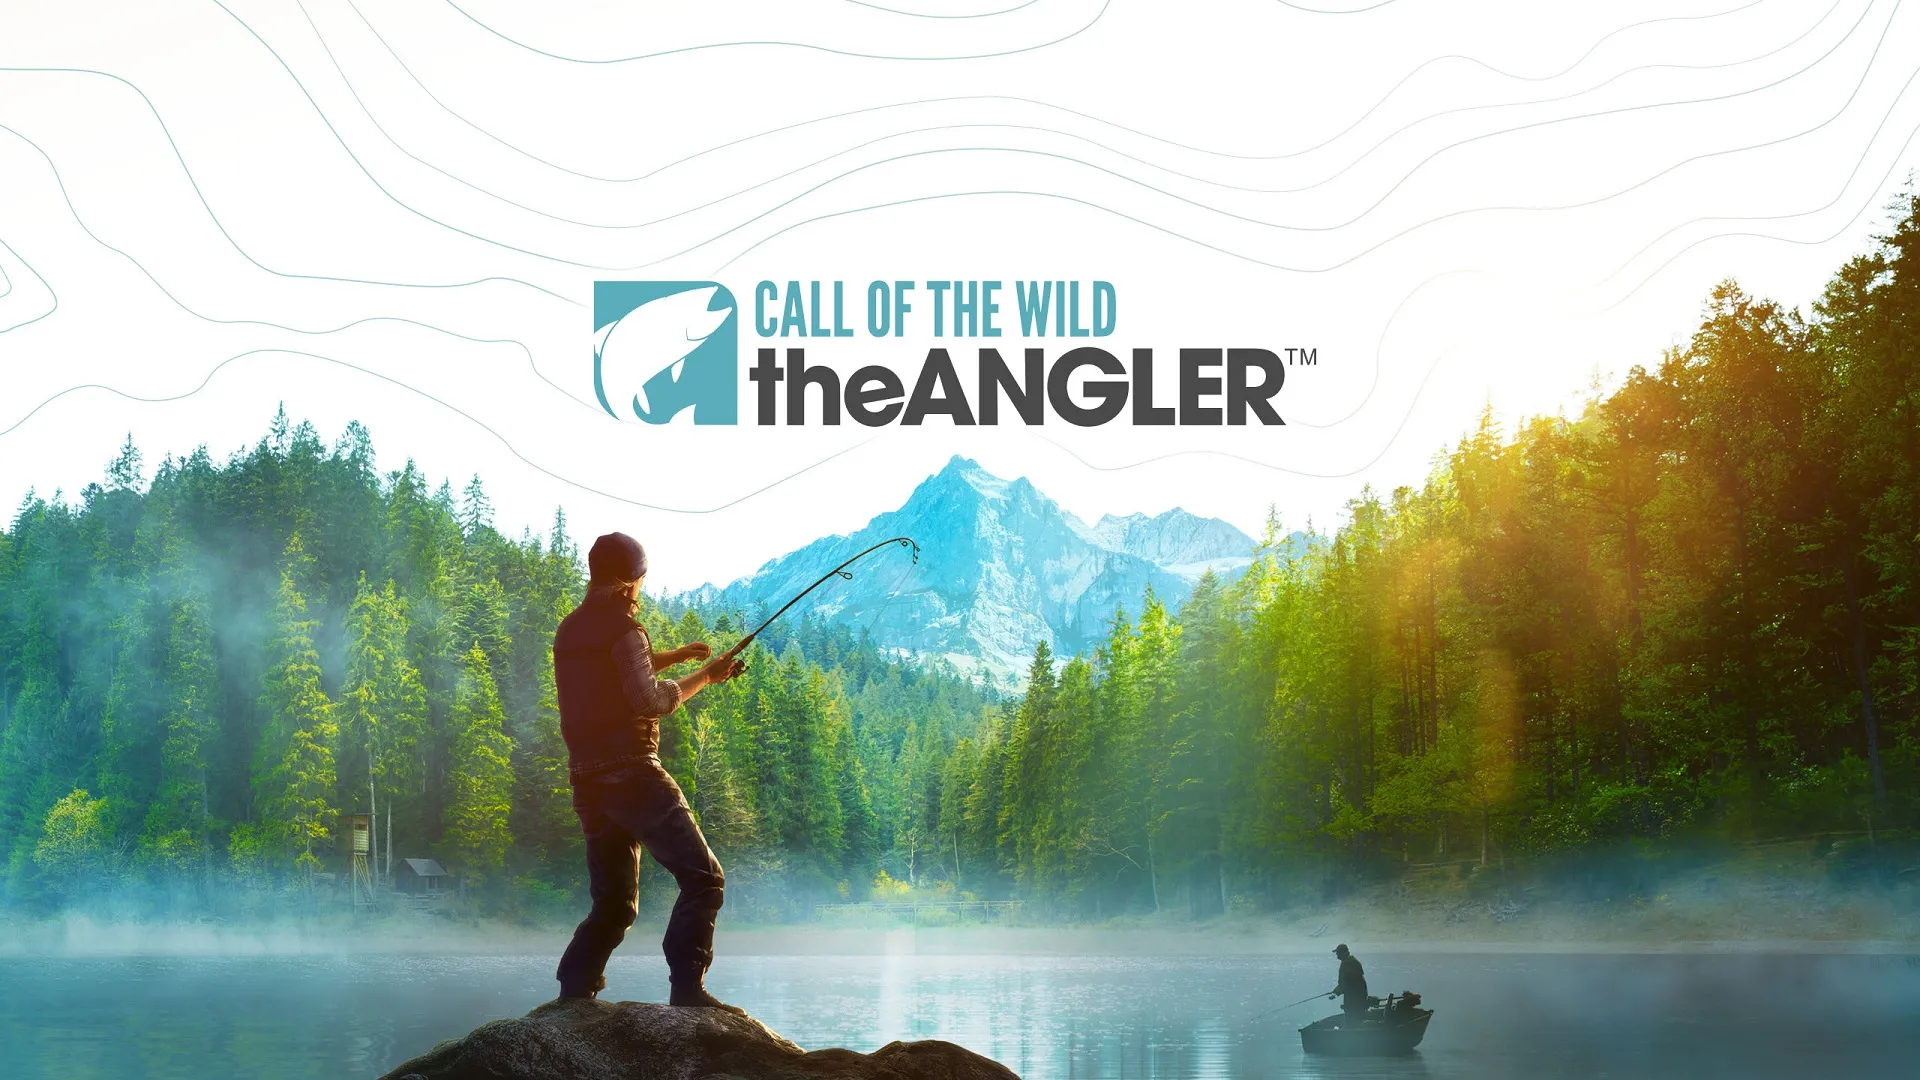 開放世界釣魚遊戲《荒野的召喚垂釣者》年底在 PC 平台推出